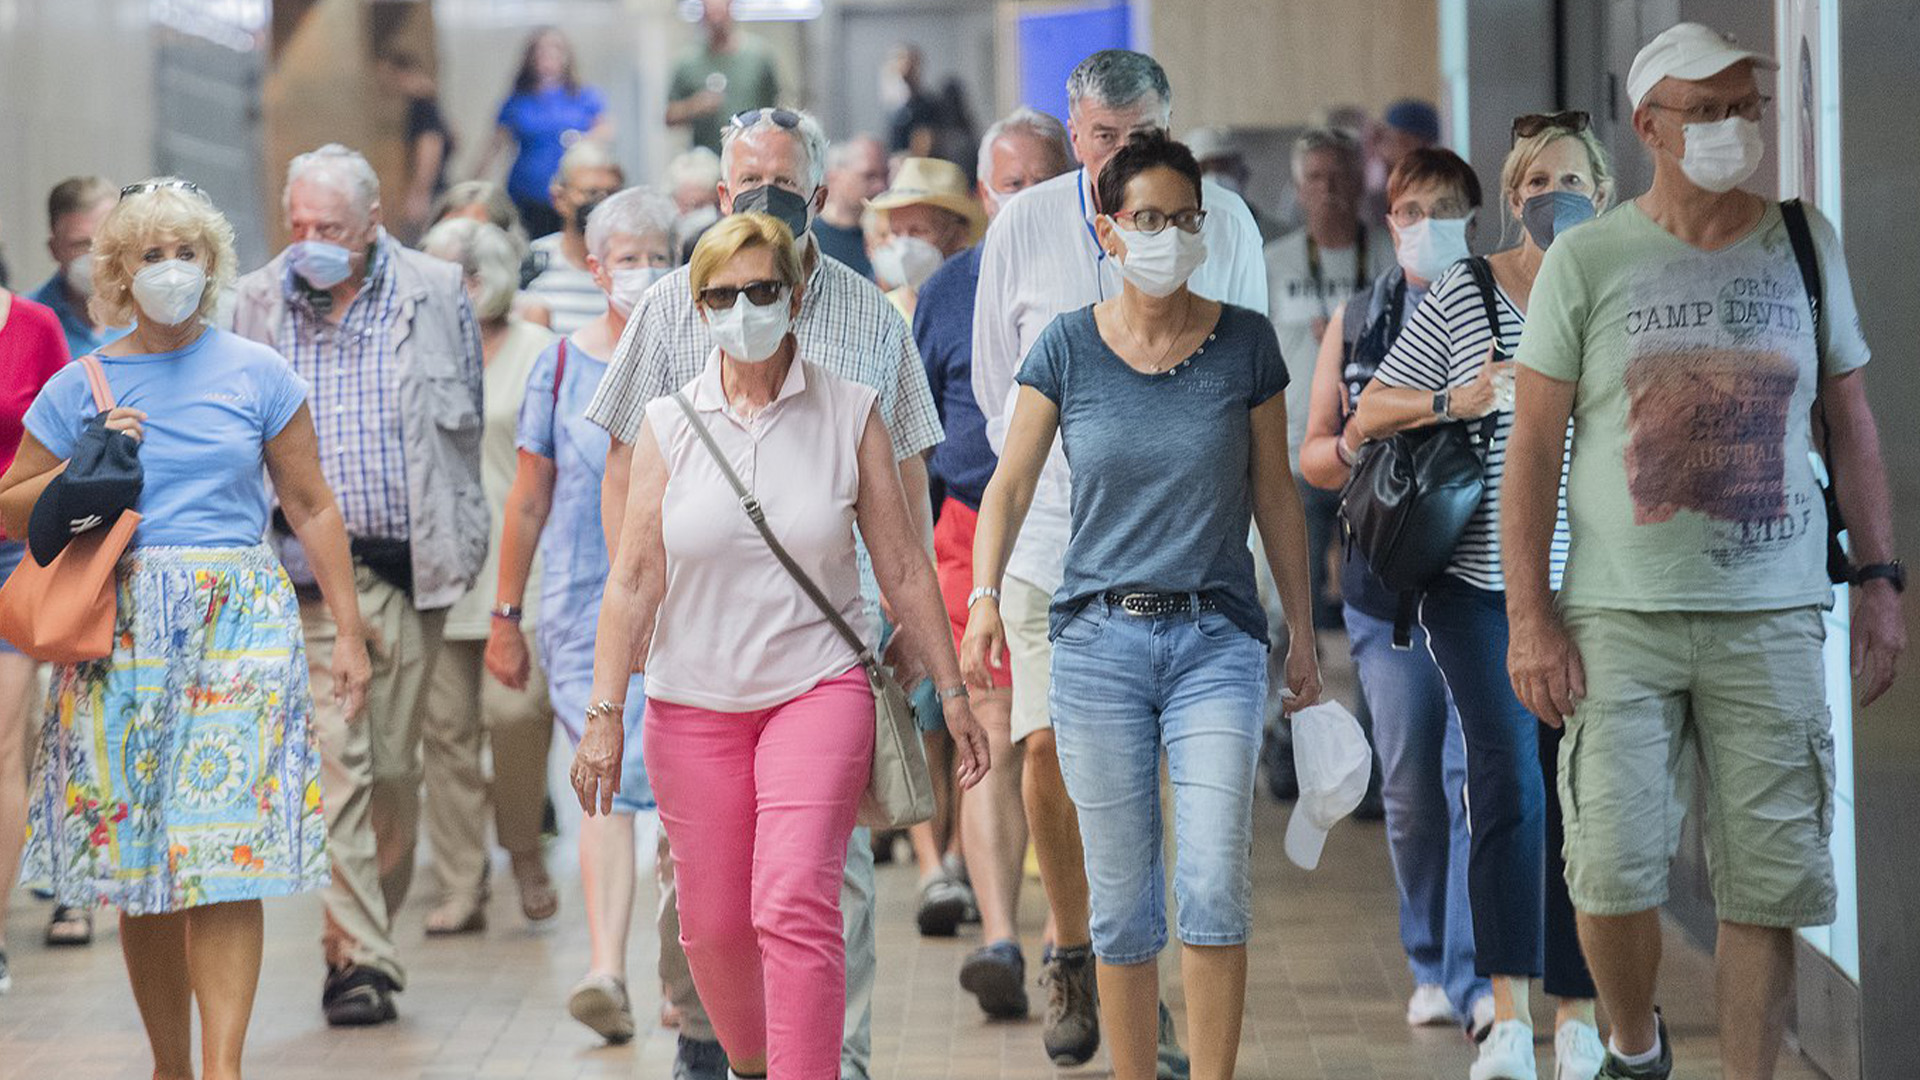 Les gens portent des masques faciaux lorsqu'ils traversent une station de métro à Montréal, le dimanche 17 juillet 2022, alors que la pandémie de COVID-19 se poursuit dans la province.